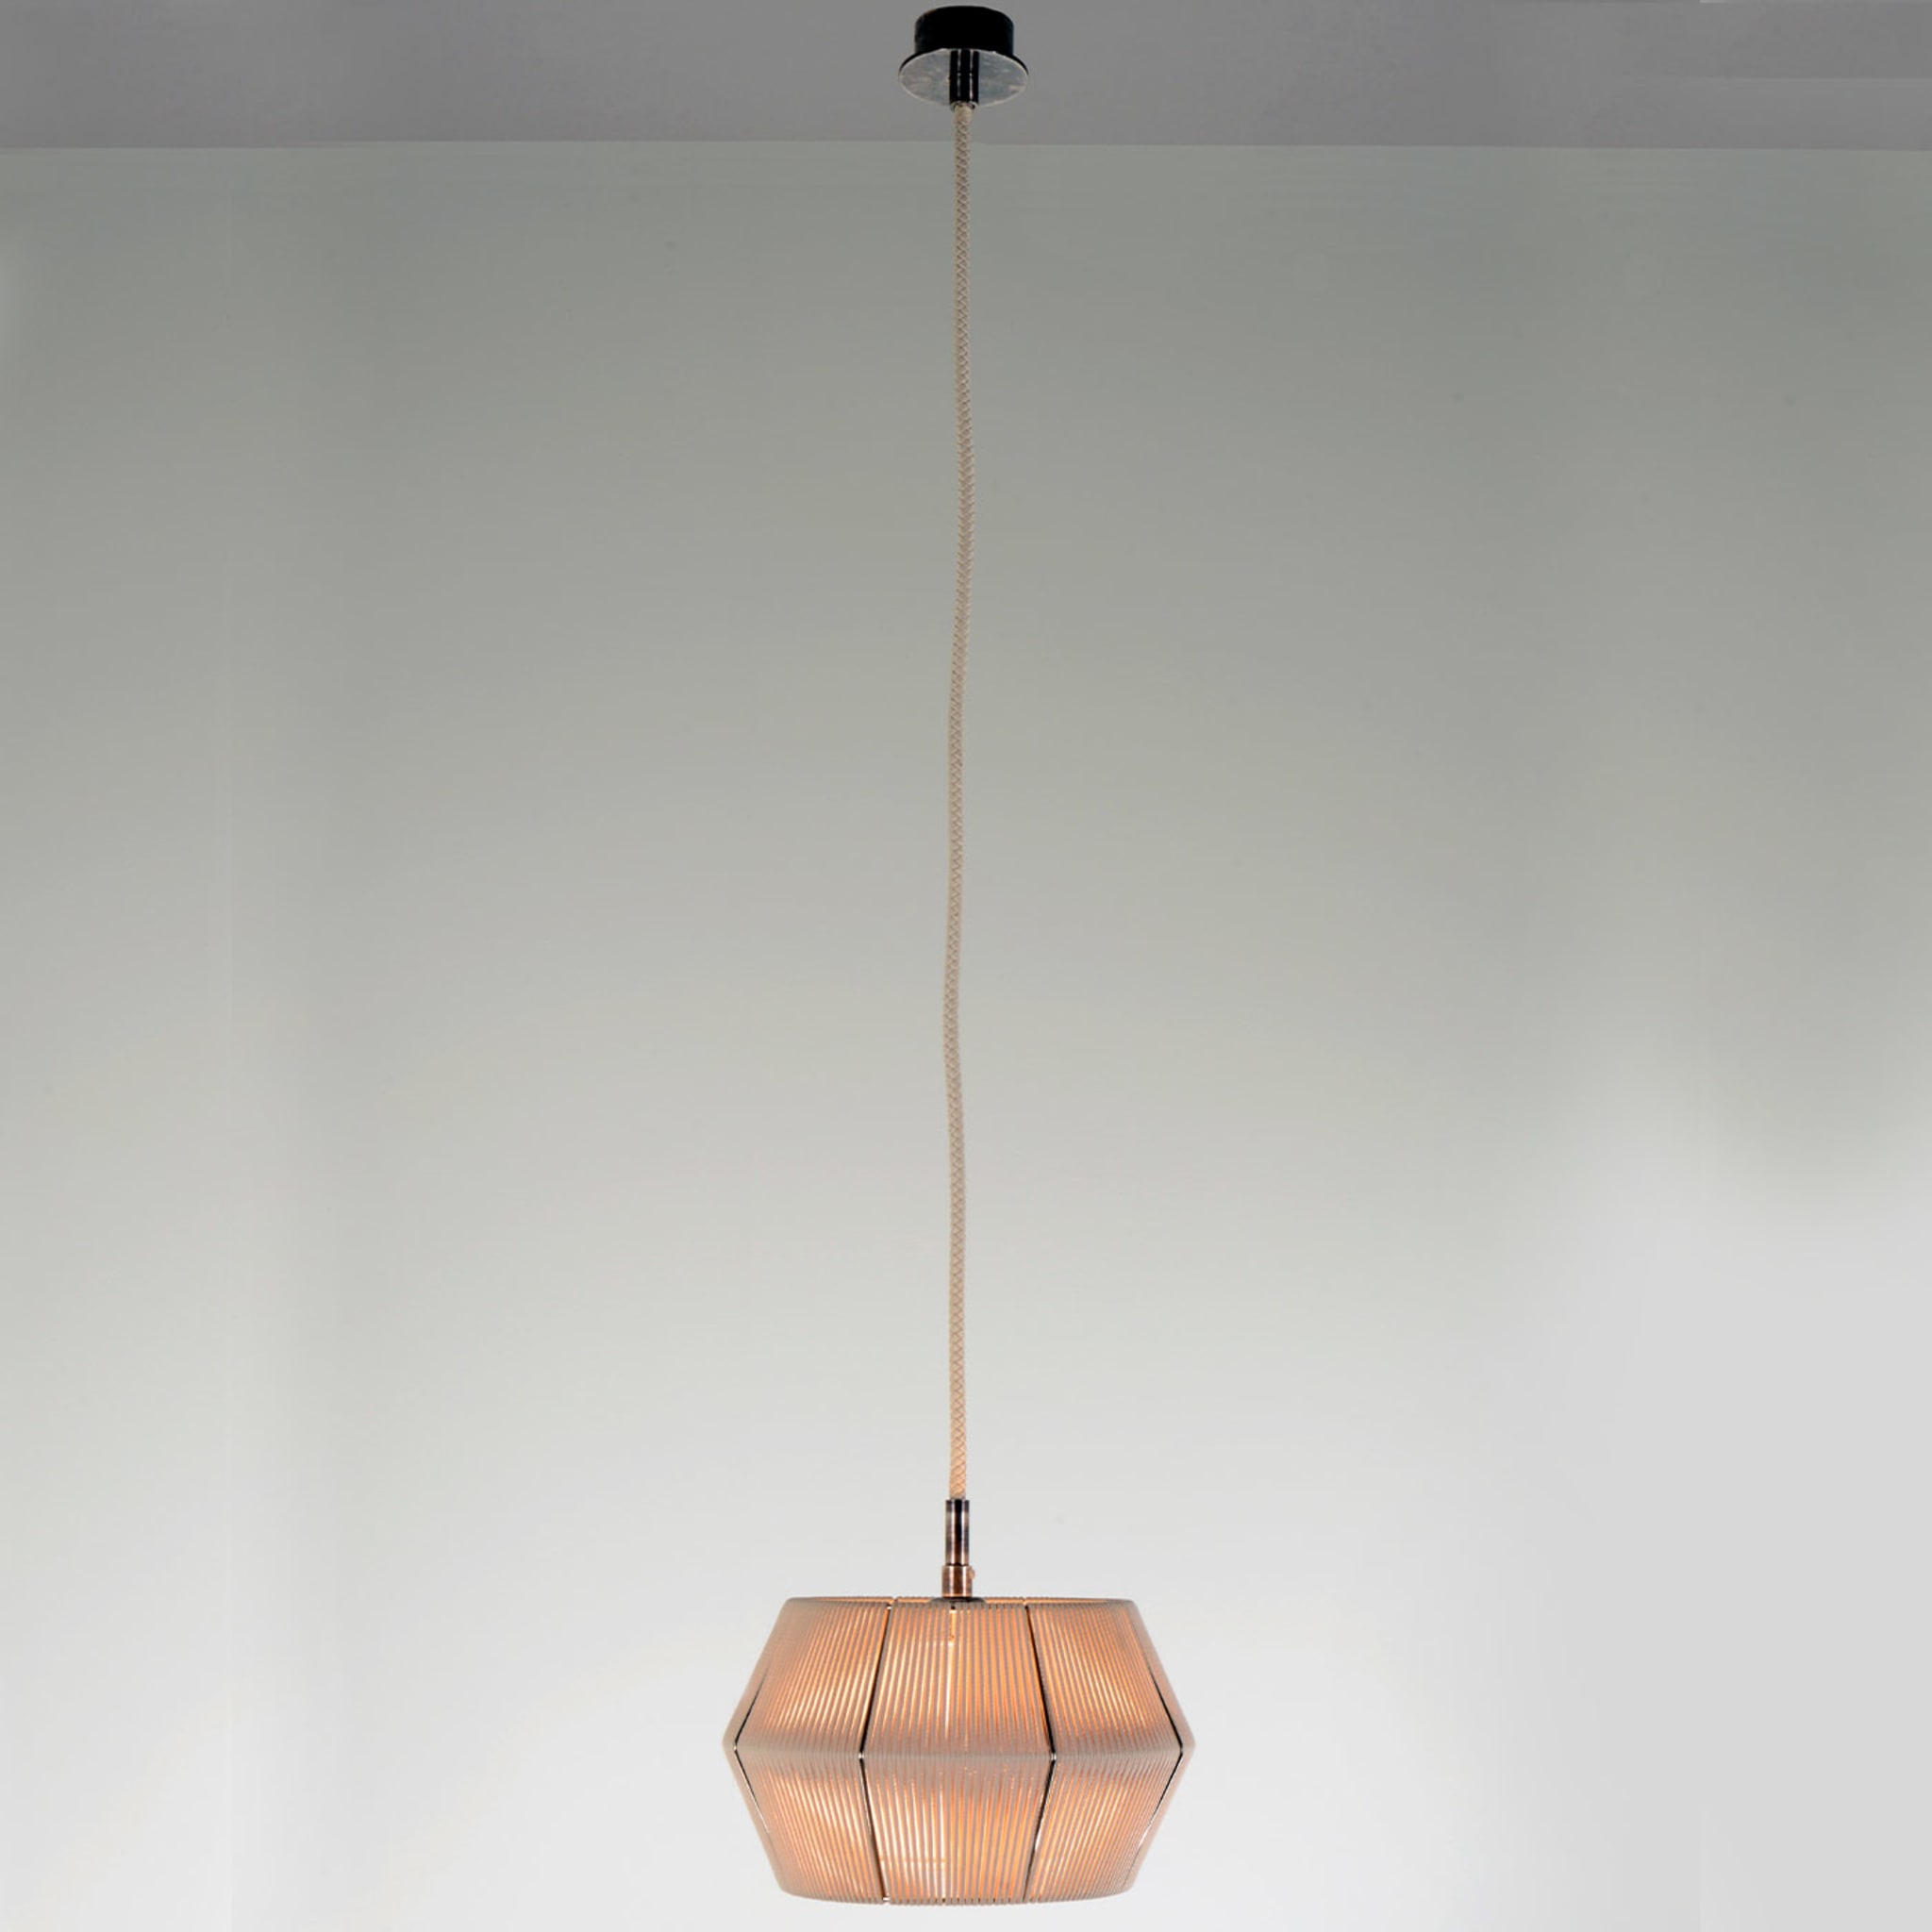 Novecento Pendant Lamp by Roberto Lazzeroni #10 - Alternative view 2